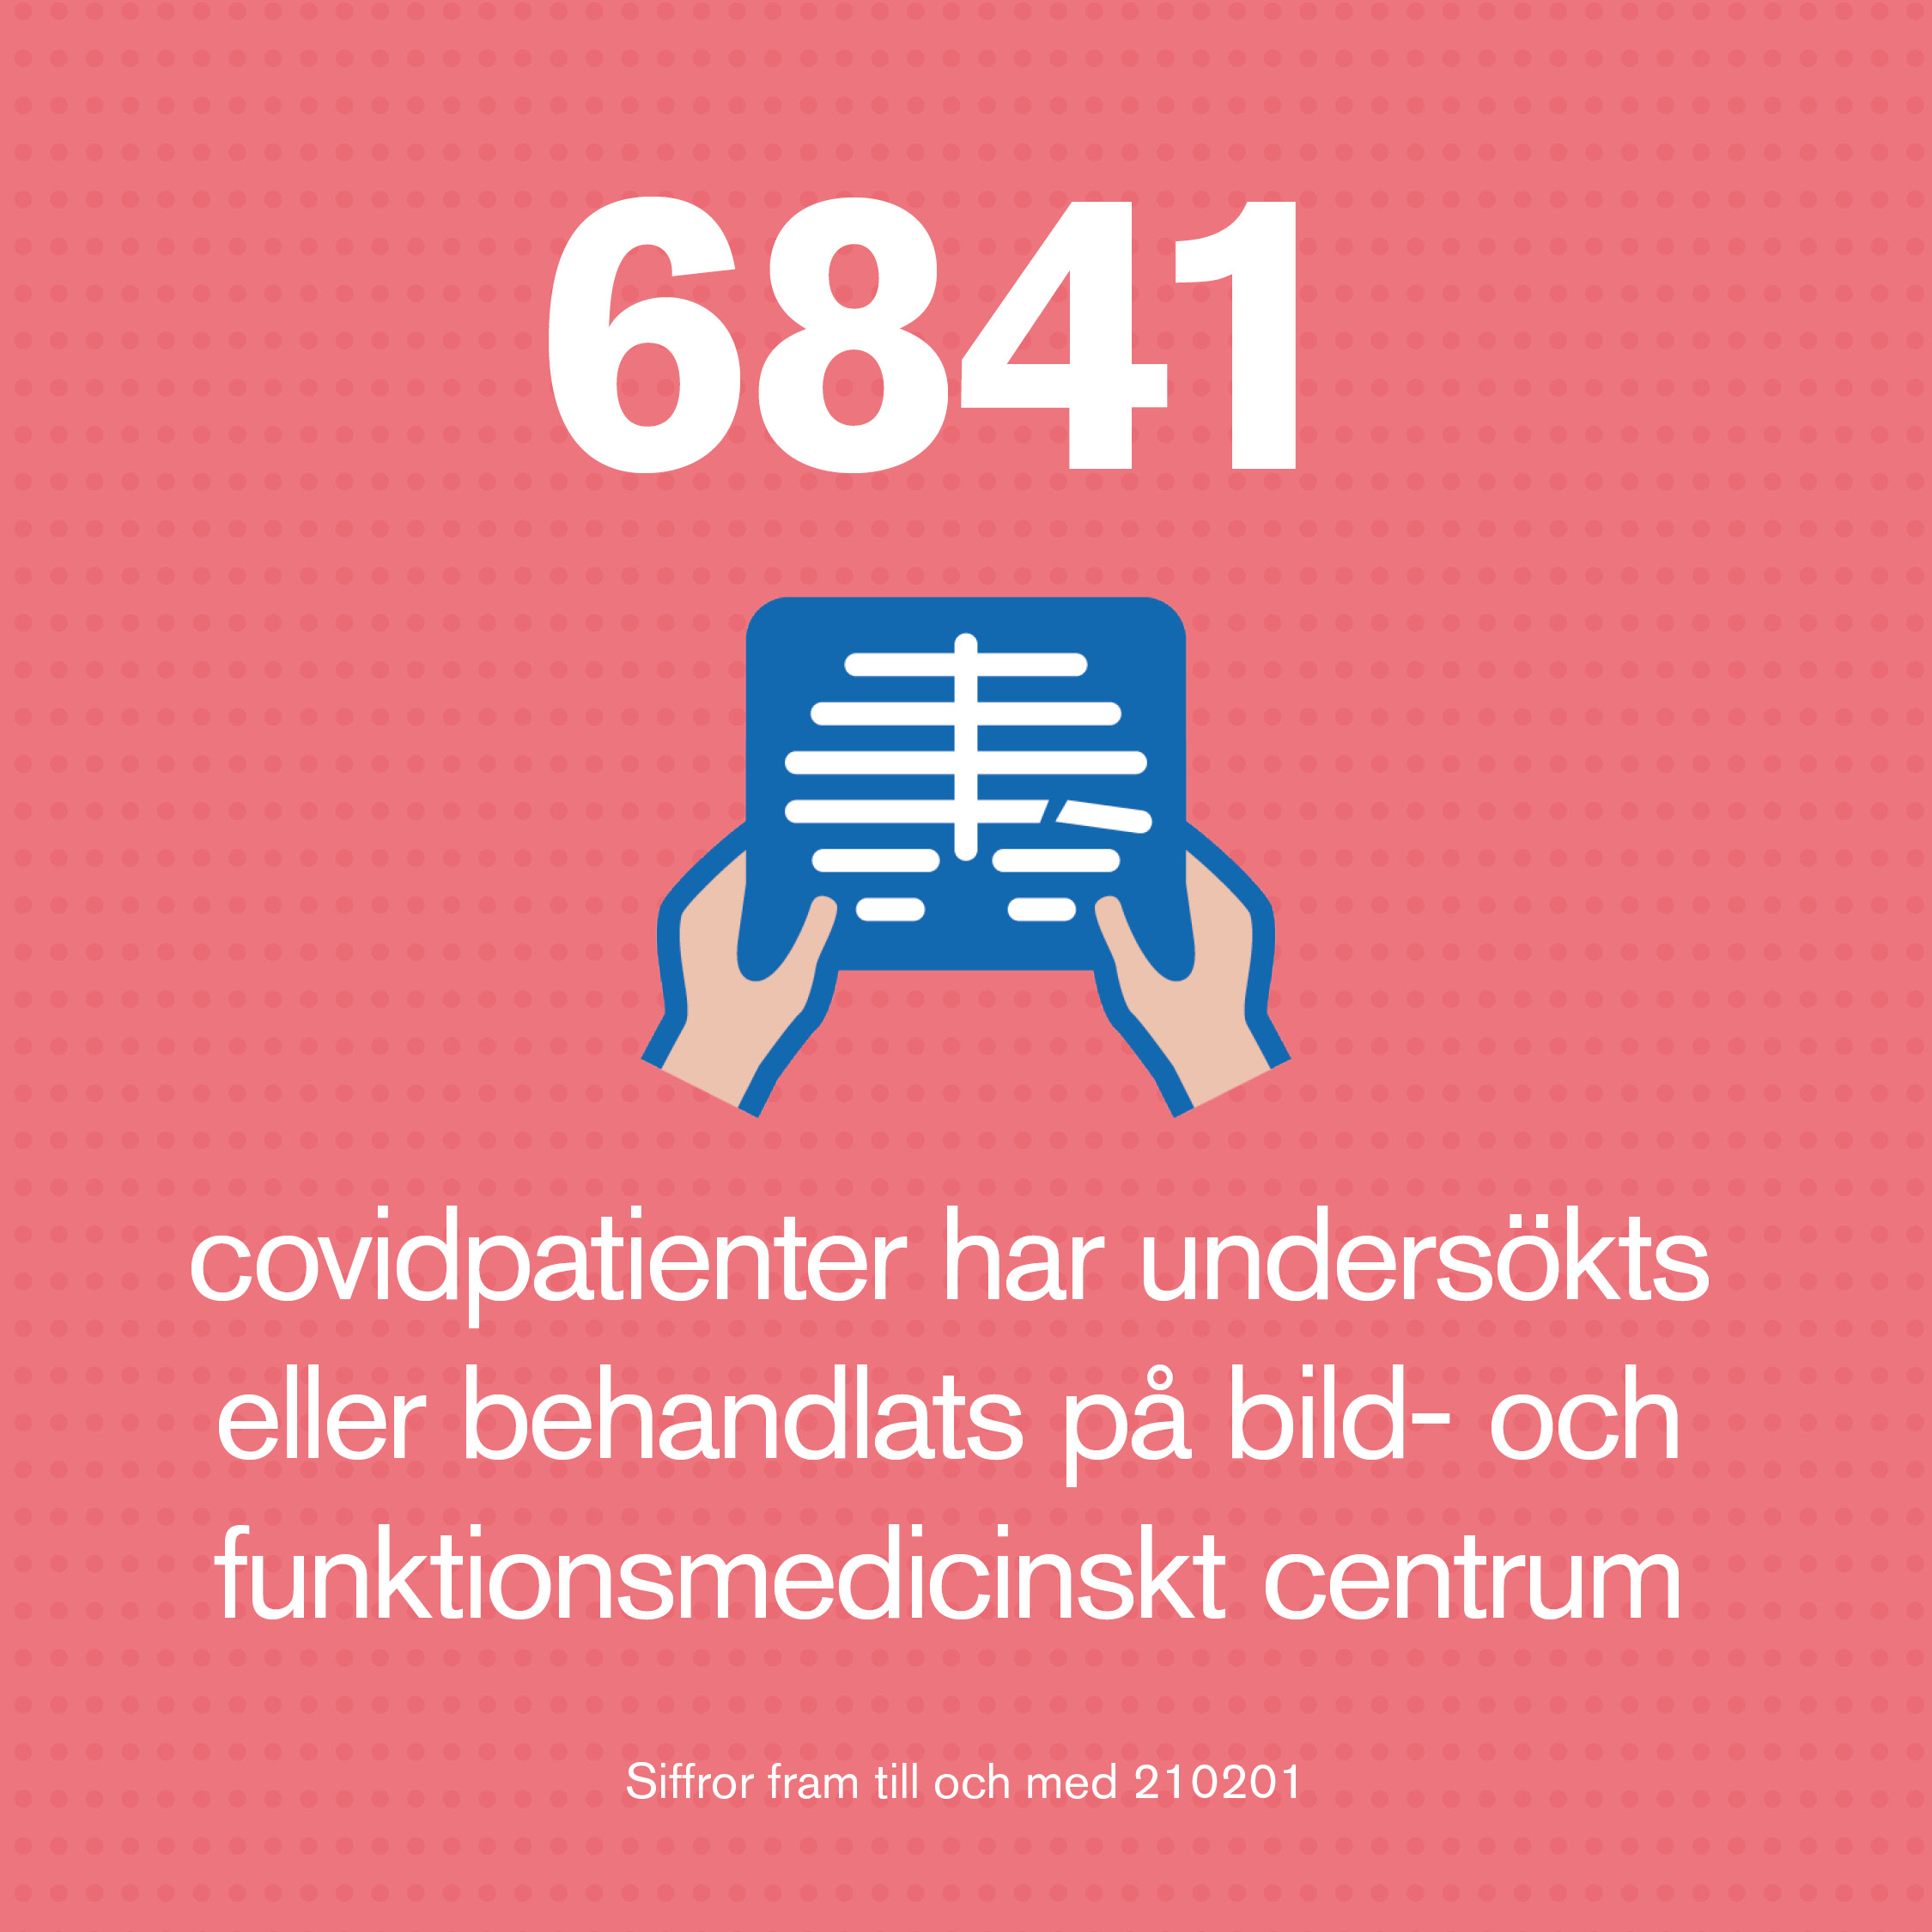 6841 covidpatienter har undersökts på bild- och funktionsmedicinskt centrum